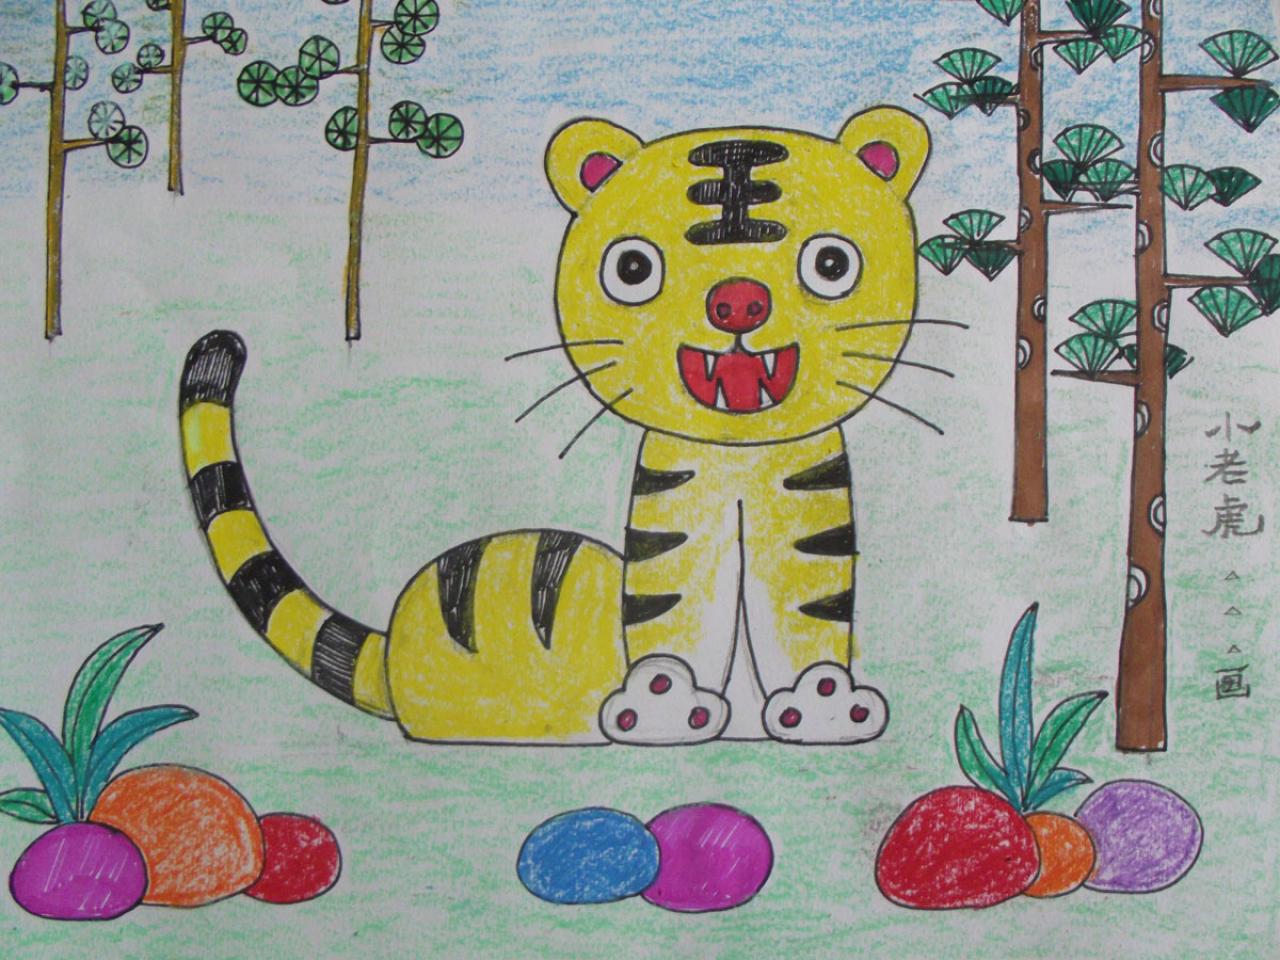 少儿学蜡笔画系列之五小老虎的画法 完成稿